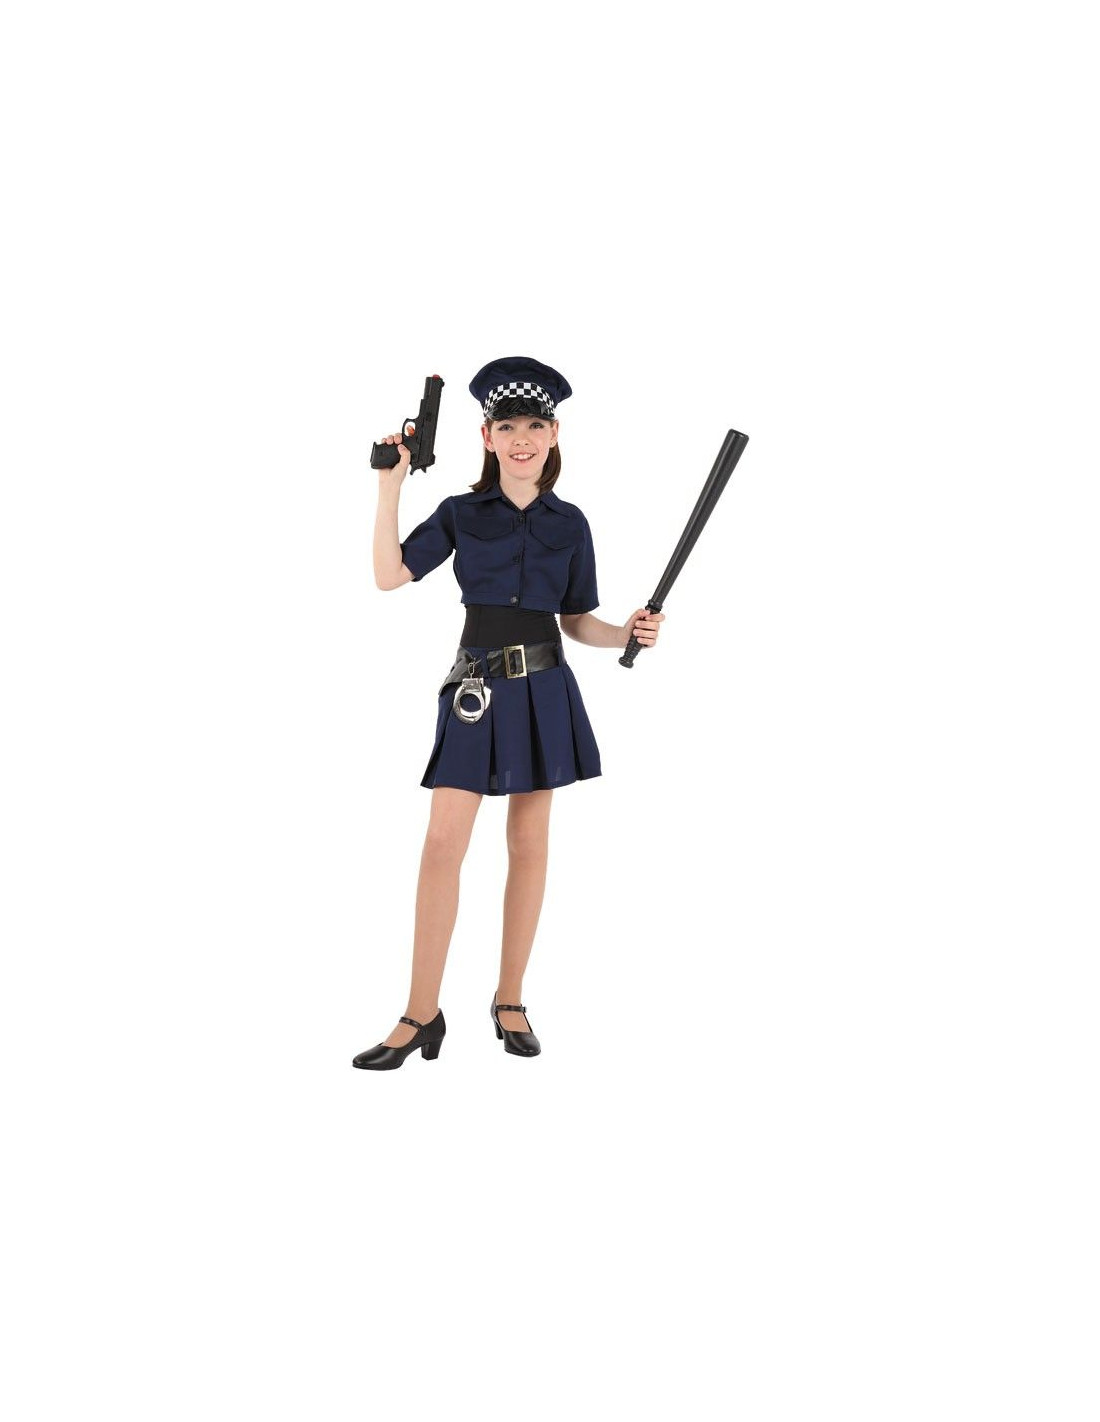 Disfraz policía mujer  Disfraz de policia mujer, Disfraz policia, Mujer  policía